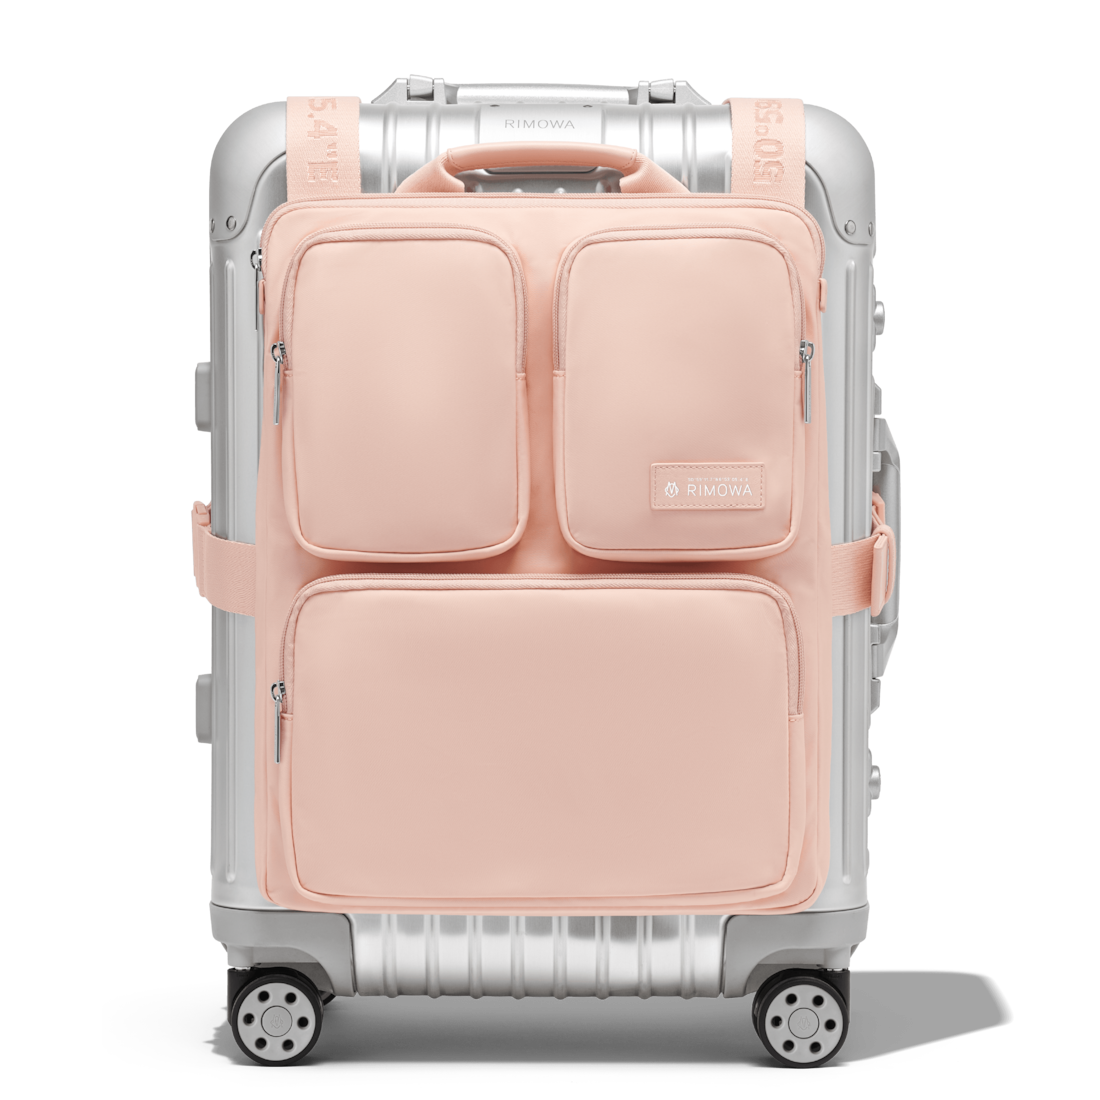 Rimowa Cabin Luggage Harness